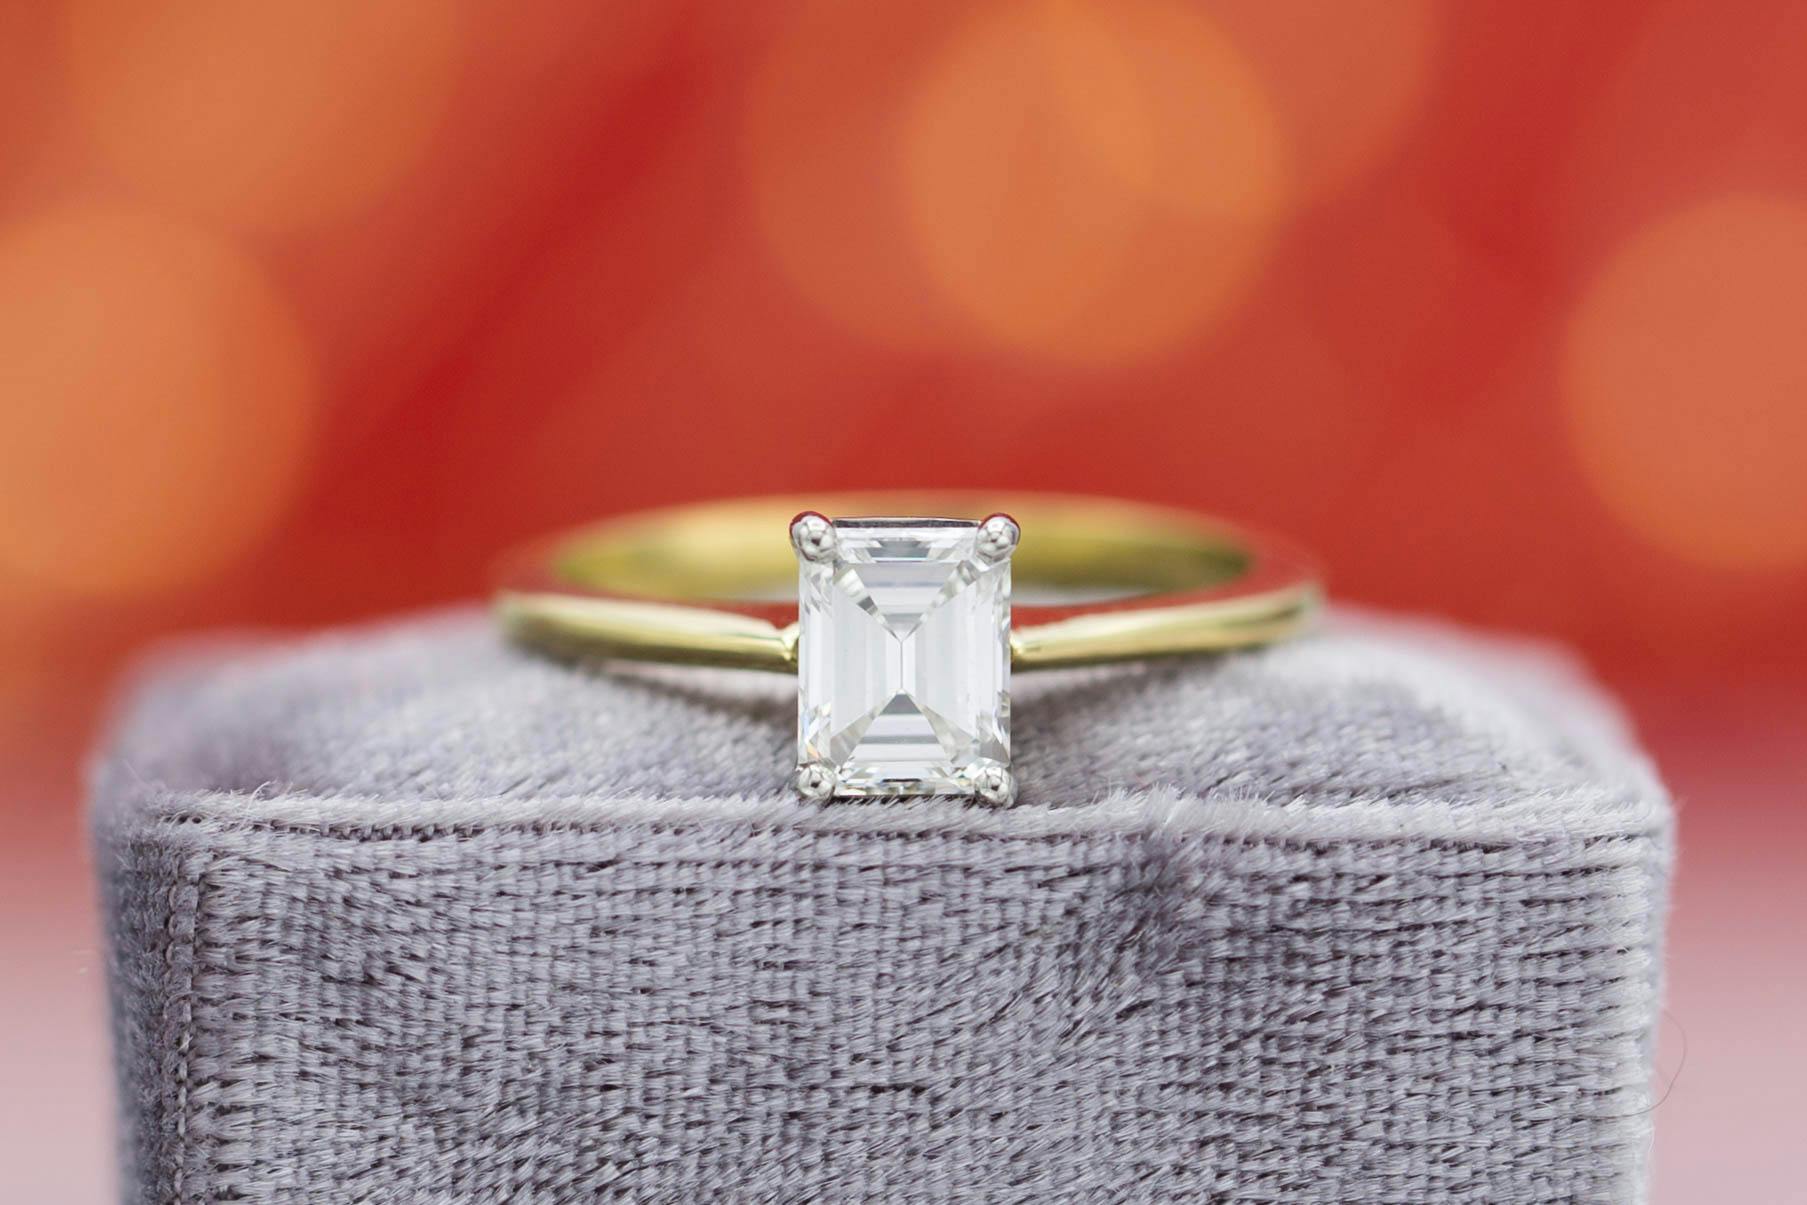 emerald & asscher cut diamonds - emerald-cut solitaire engagement ring